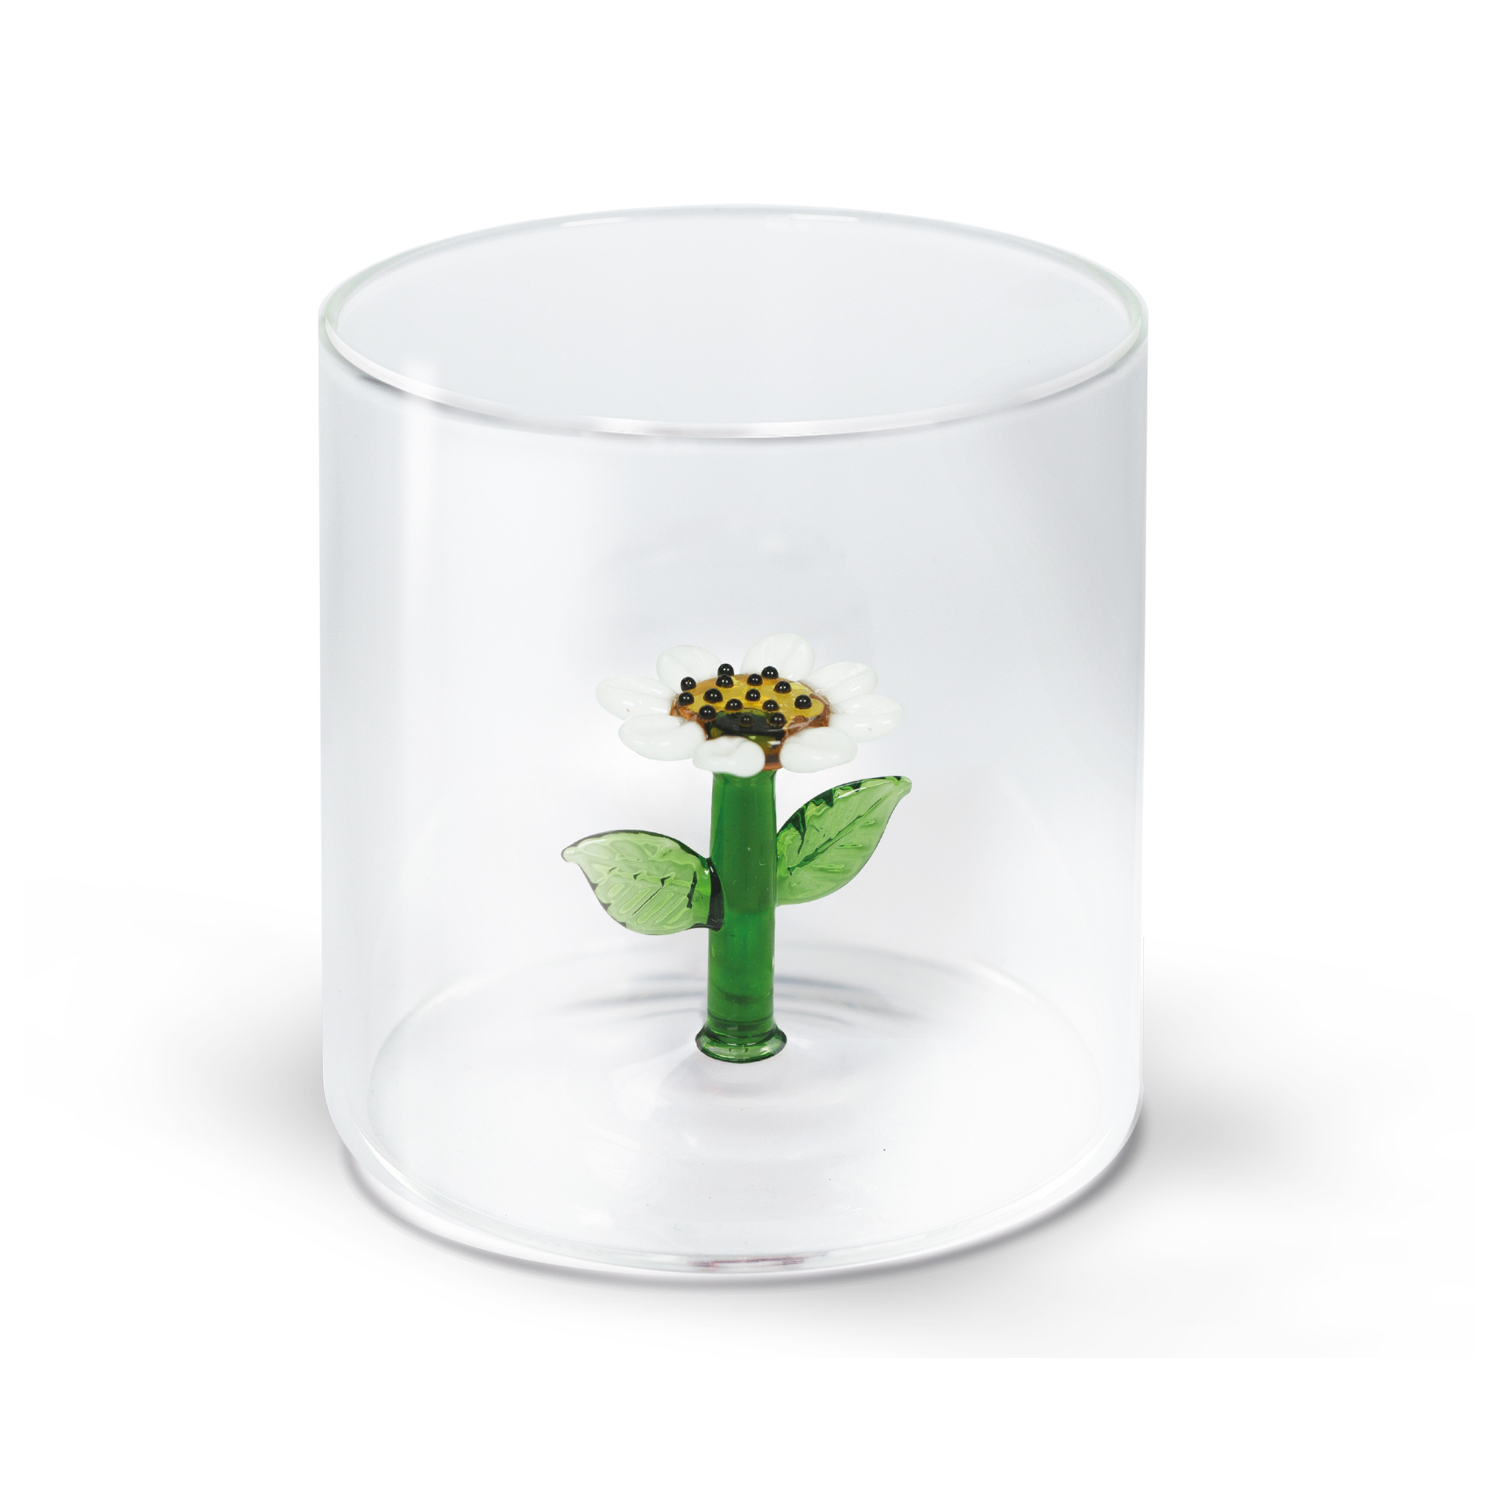 Стакан WD Lifestyle Ромашка 250 мл стакан для пишущих принадлежностей квадратный металлическая сетка зелёный